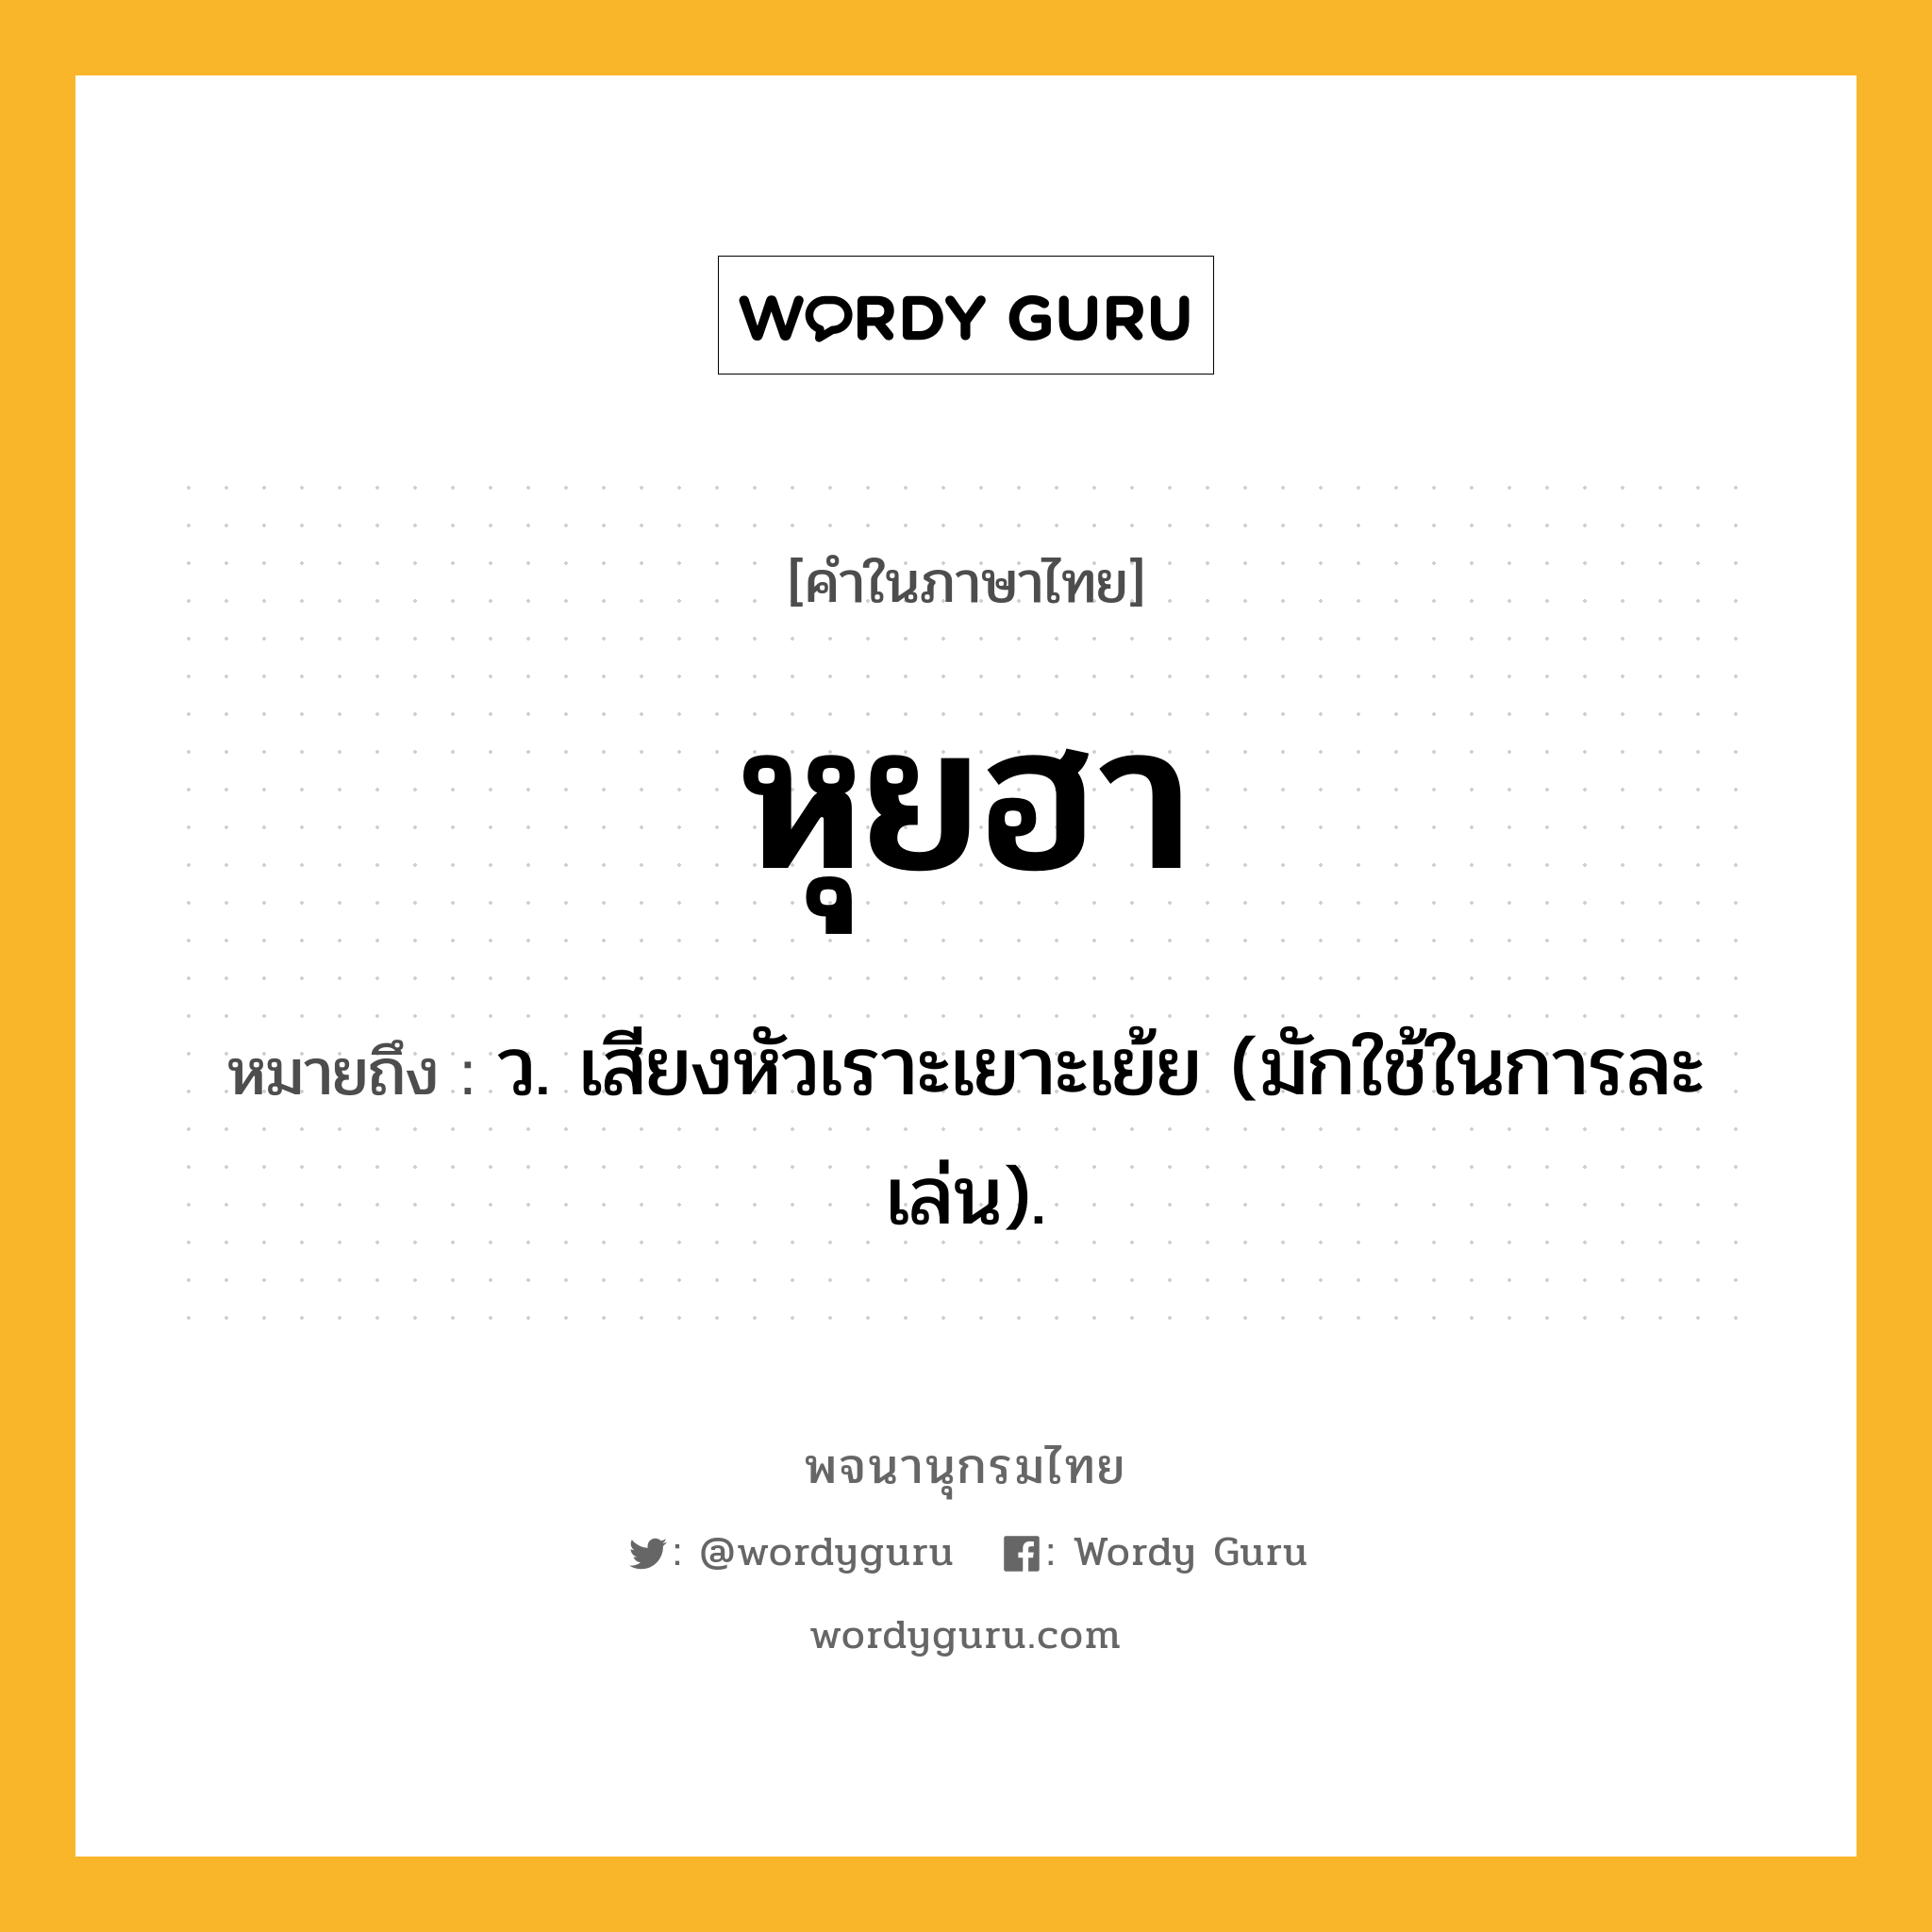 หุยฮา หมายถึงอะไร?, คำในภาษาไทย หุยฮา หมายถึง ว. เสียงหัวเราะเยาะเย้ย (มักใช้ในการละเล่น).